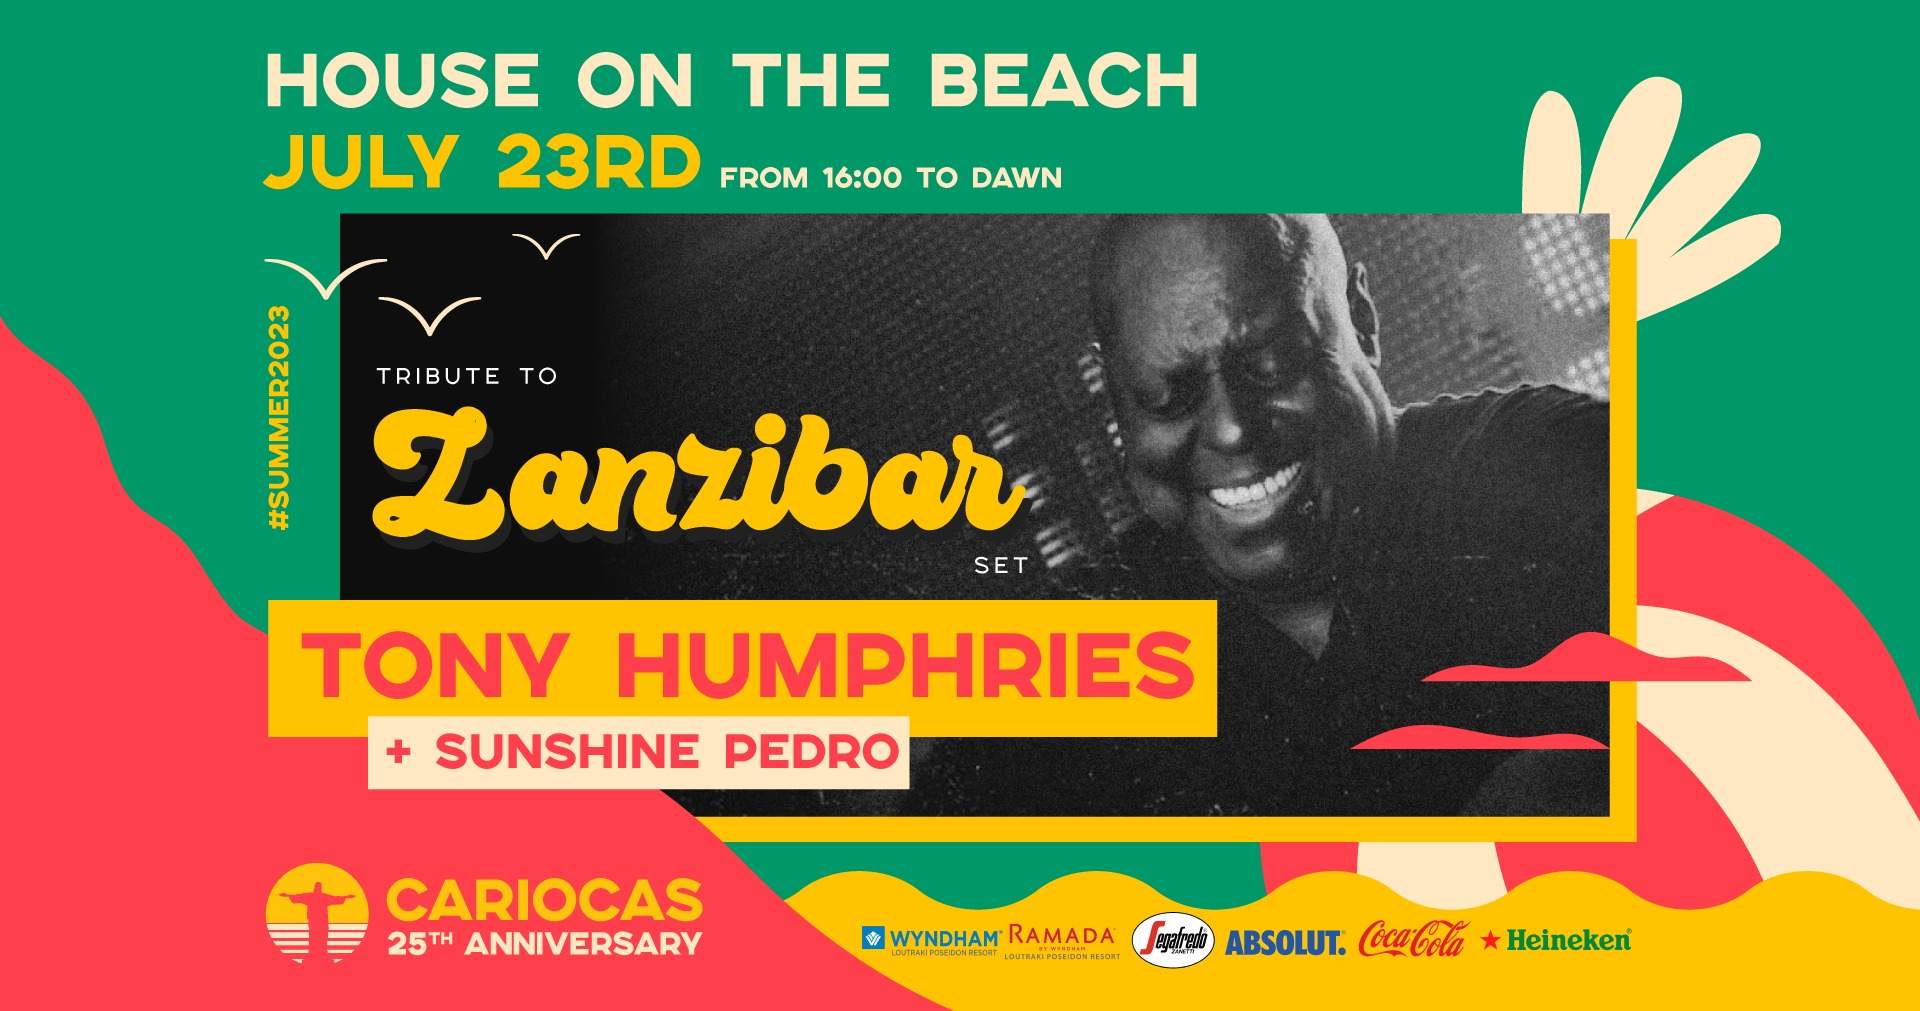 Tony Humphries (tribute to Zanzibar) - HOUSE ON THE BEACH - Página frontal